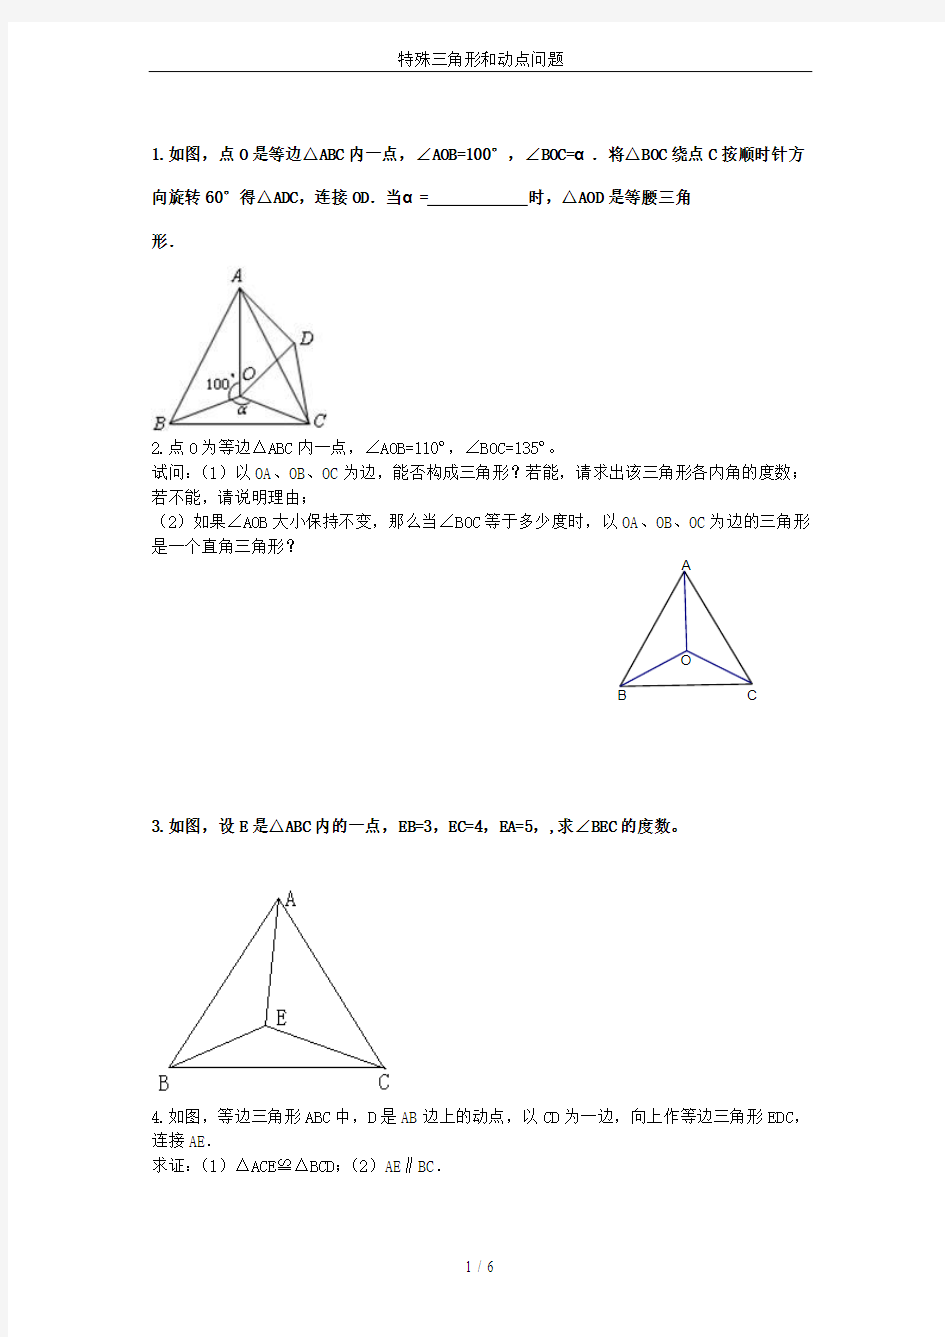 特殊三角形和动点问题